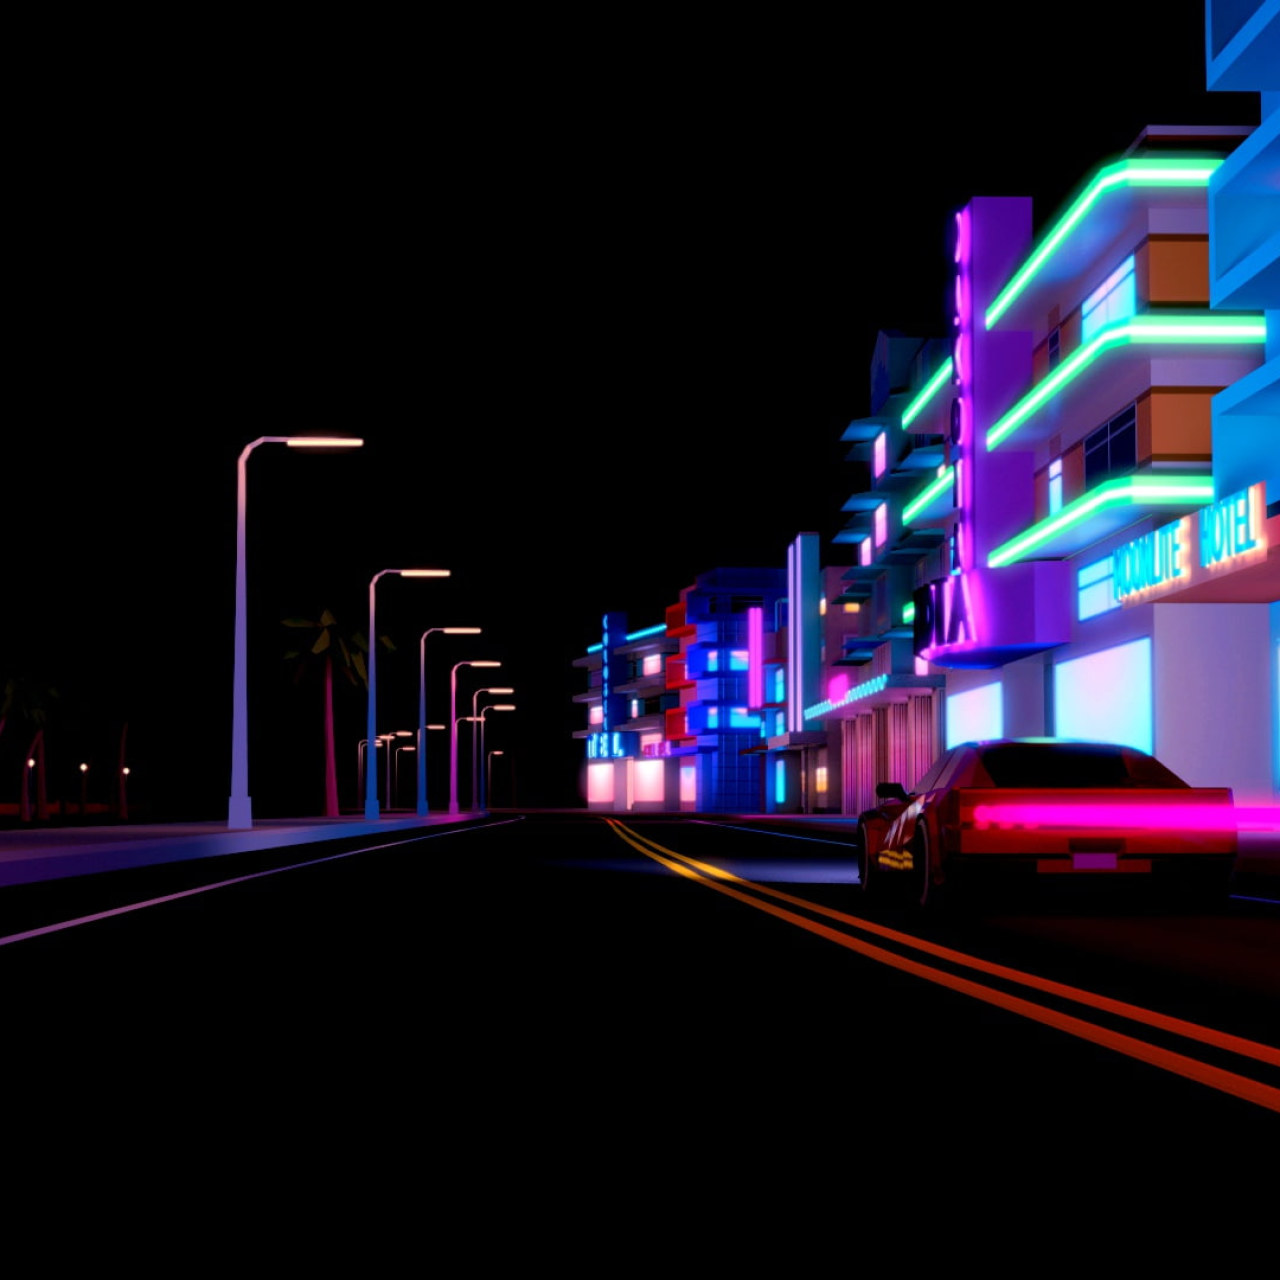 80S Neon Road Wallpapers